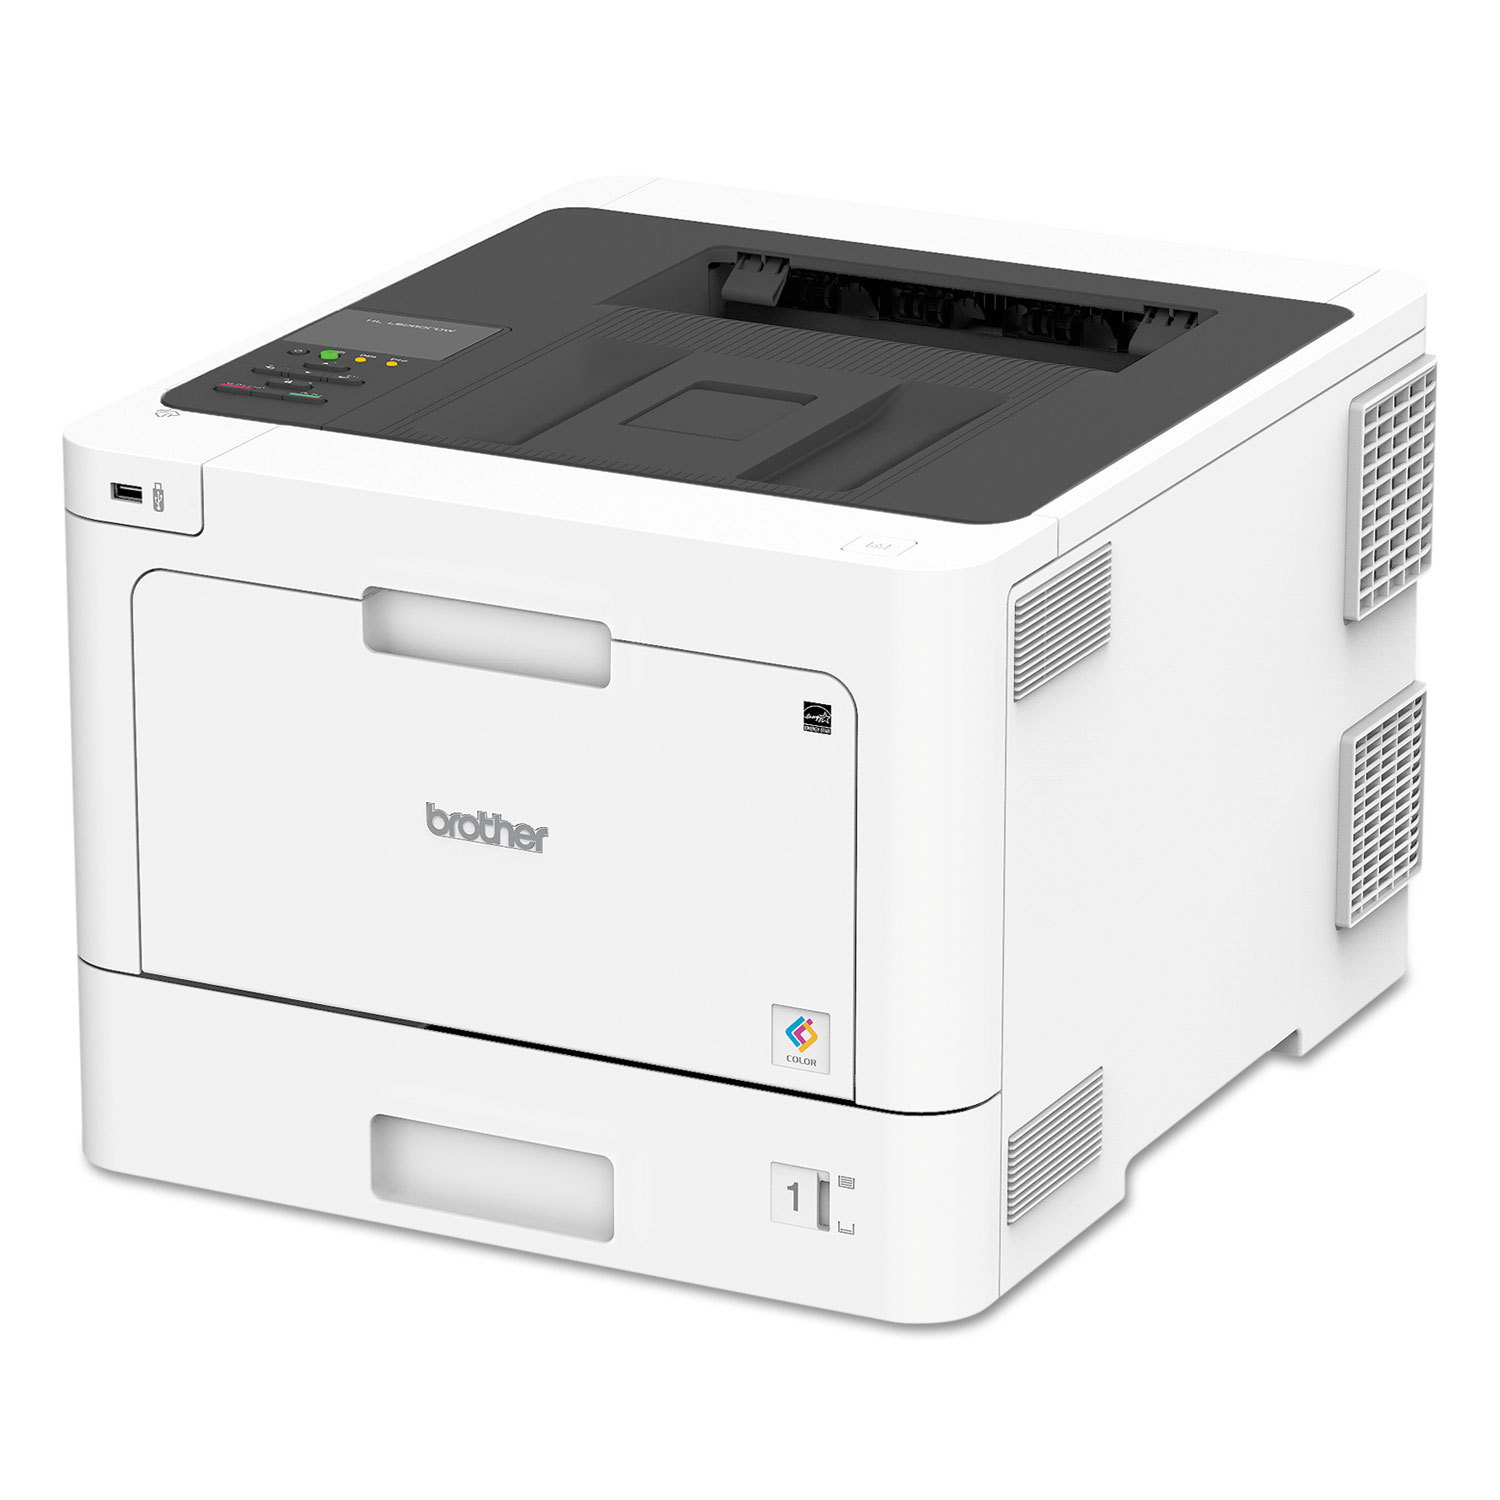 HL-L8360CDW Business Color Laser Printer, Duplex Printing